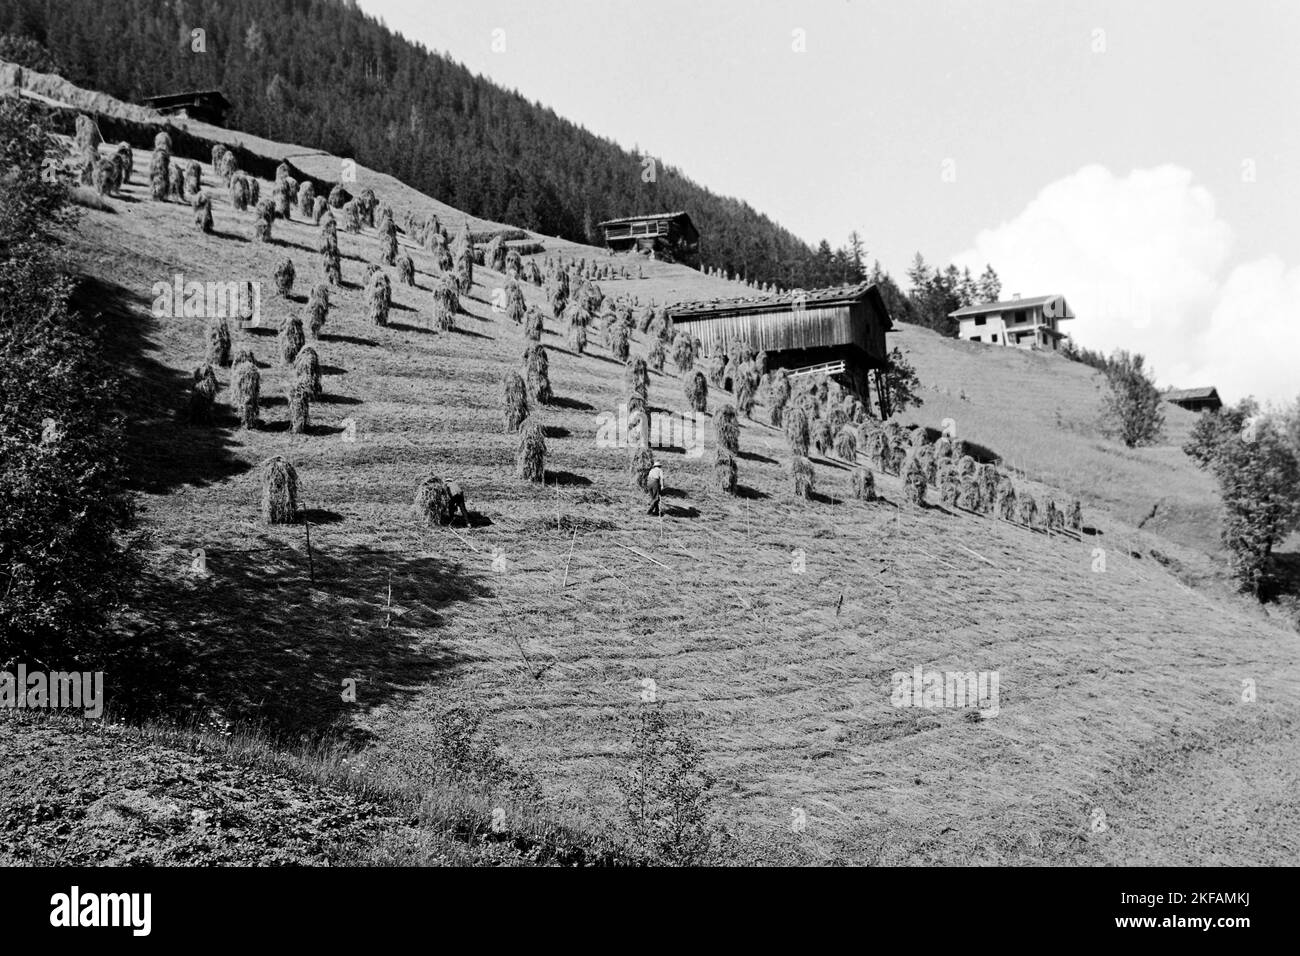 Heuhaufen im Zillertal, Tirol, 1970. Haystacks in the Ziller Valley, Tyrol, 1970. Stock Photo